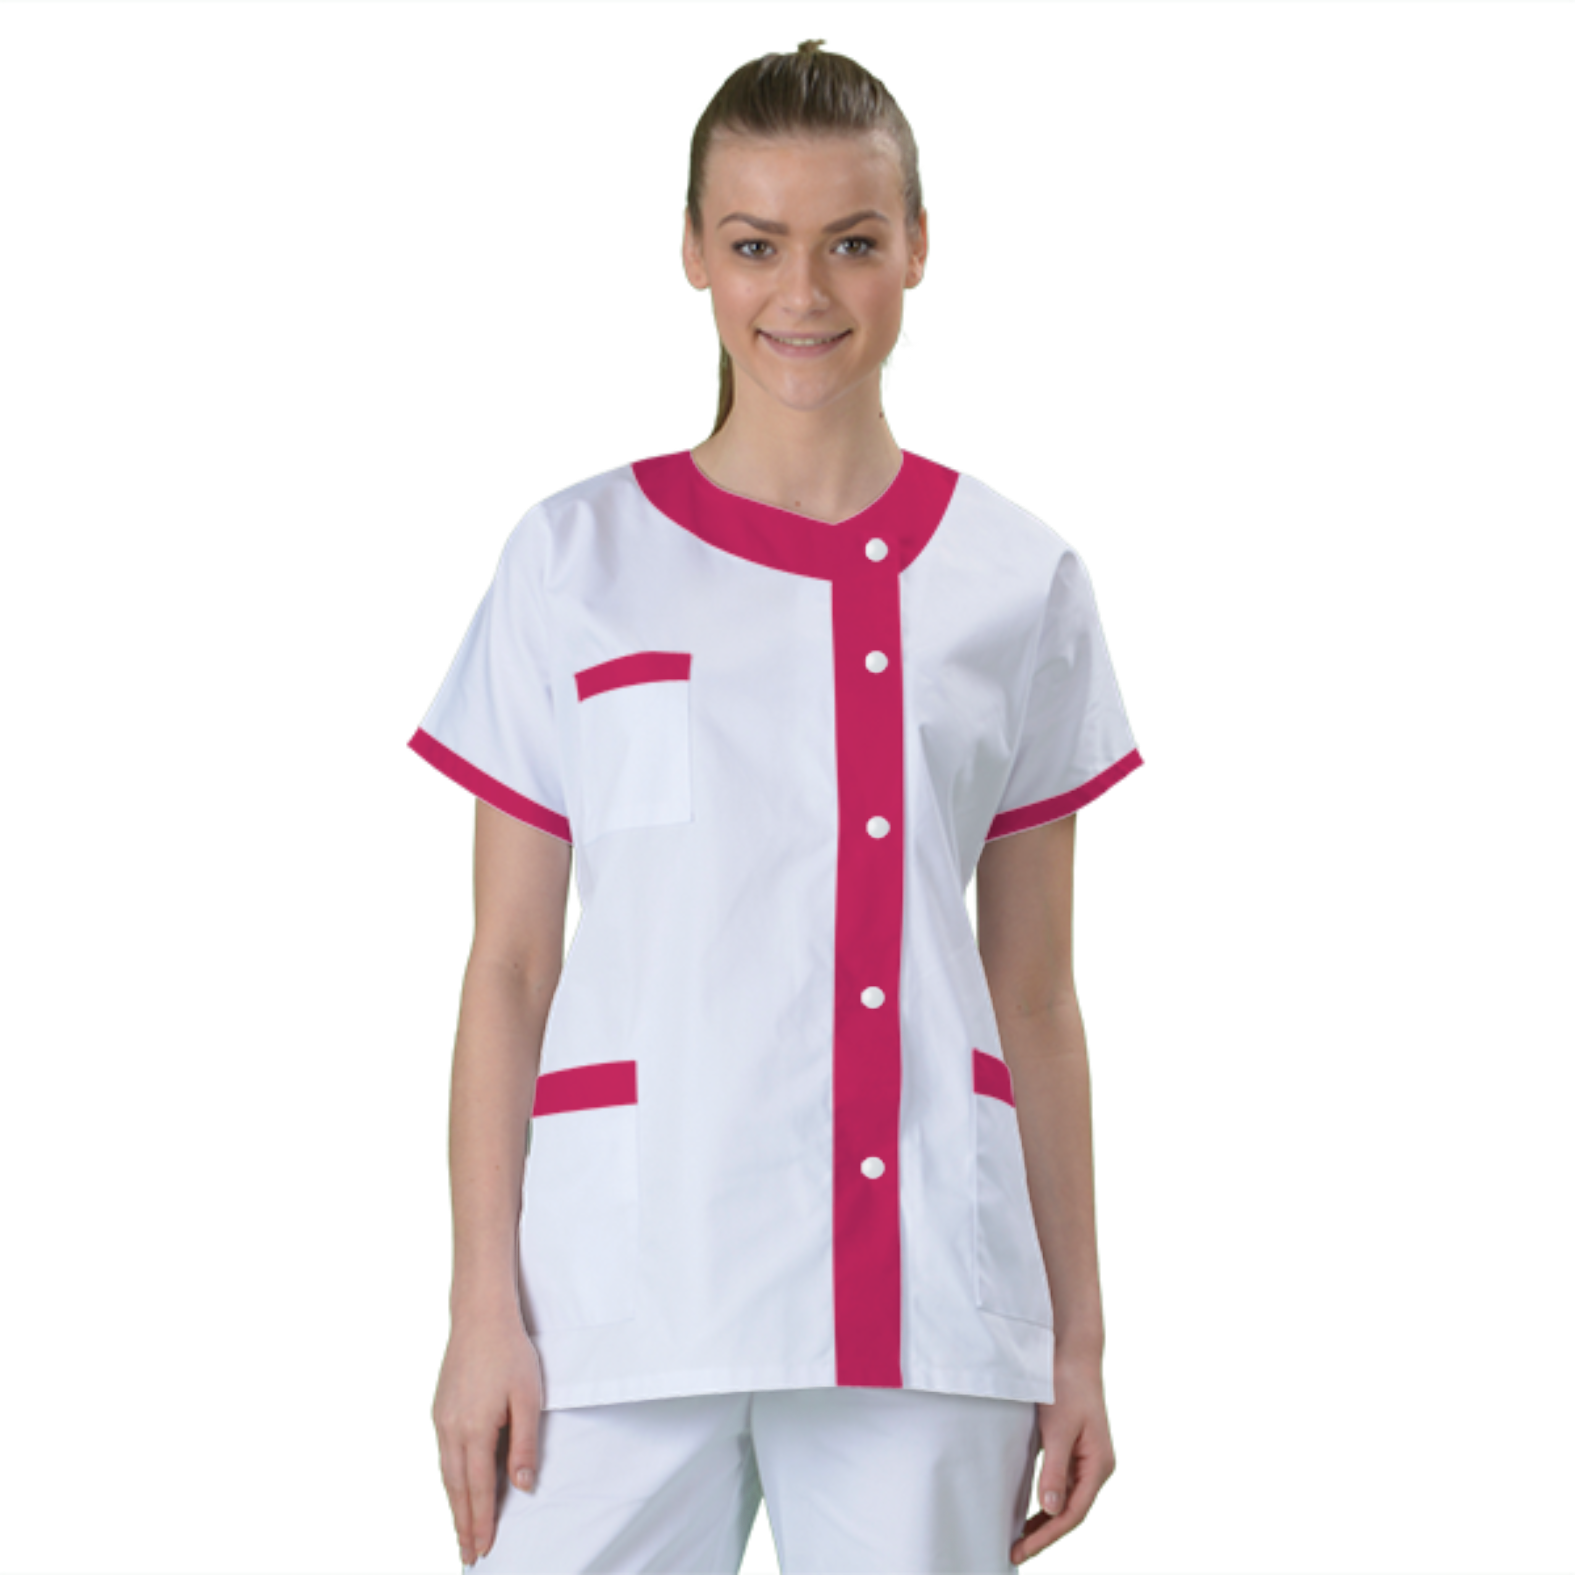 blouse-medicale-col-carre-a-personnaliser acheté - par Stéphanie - le 01-12-2019